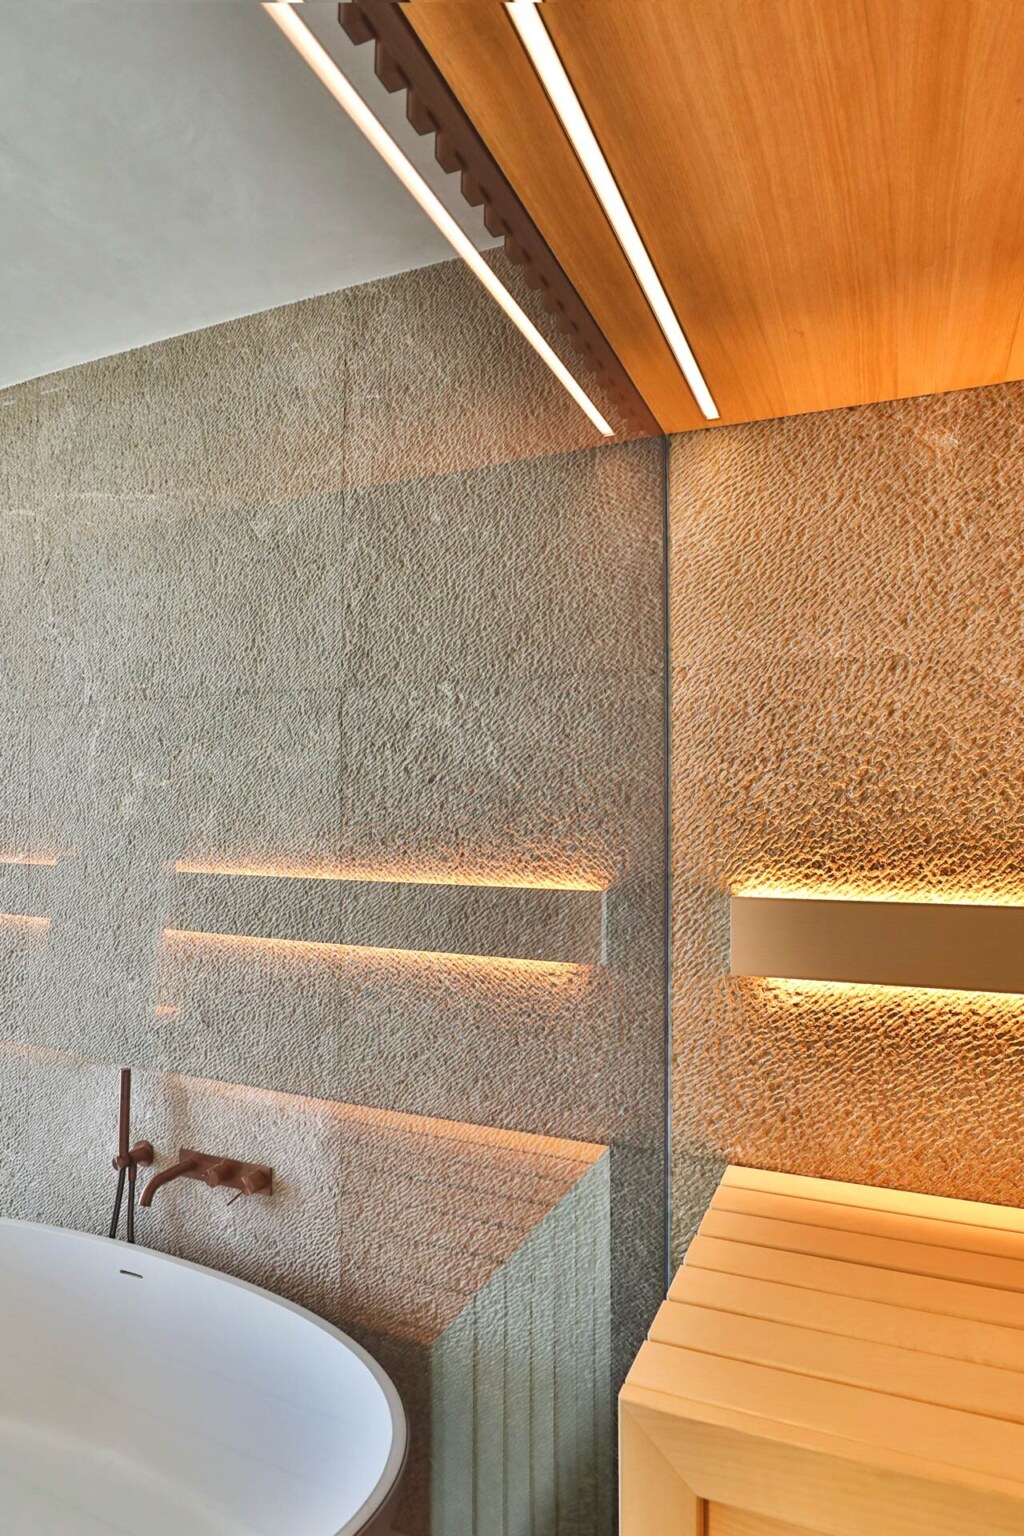 Bleuchtete, moderne Sauna aus hellem Holz mit integrierter Natursteinwand und getönter Verglasung.